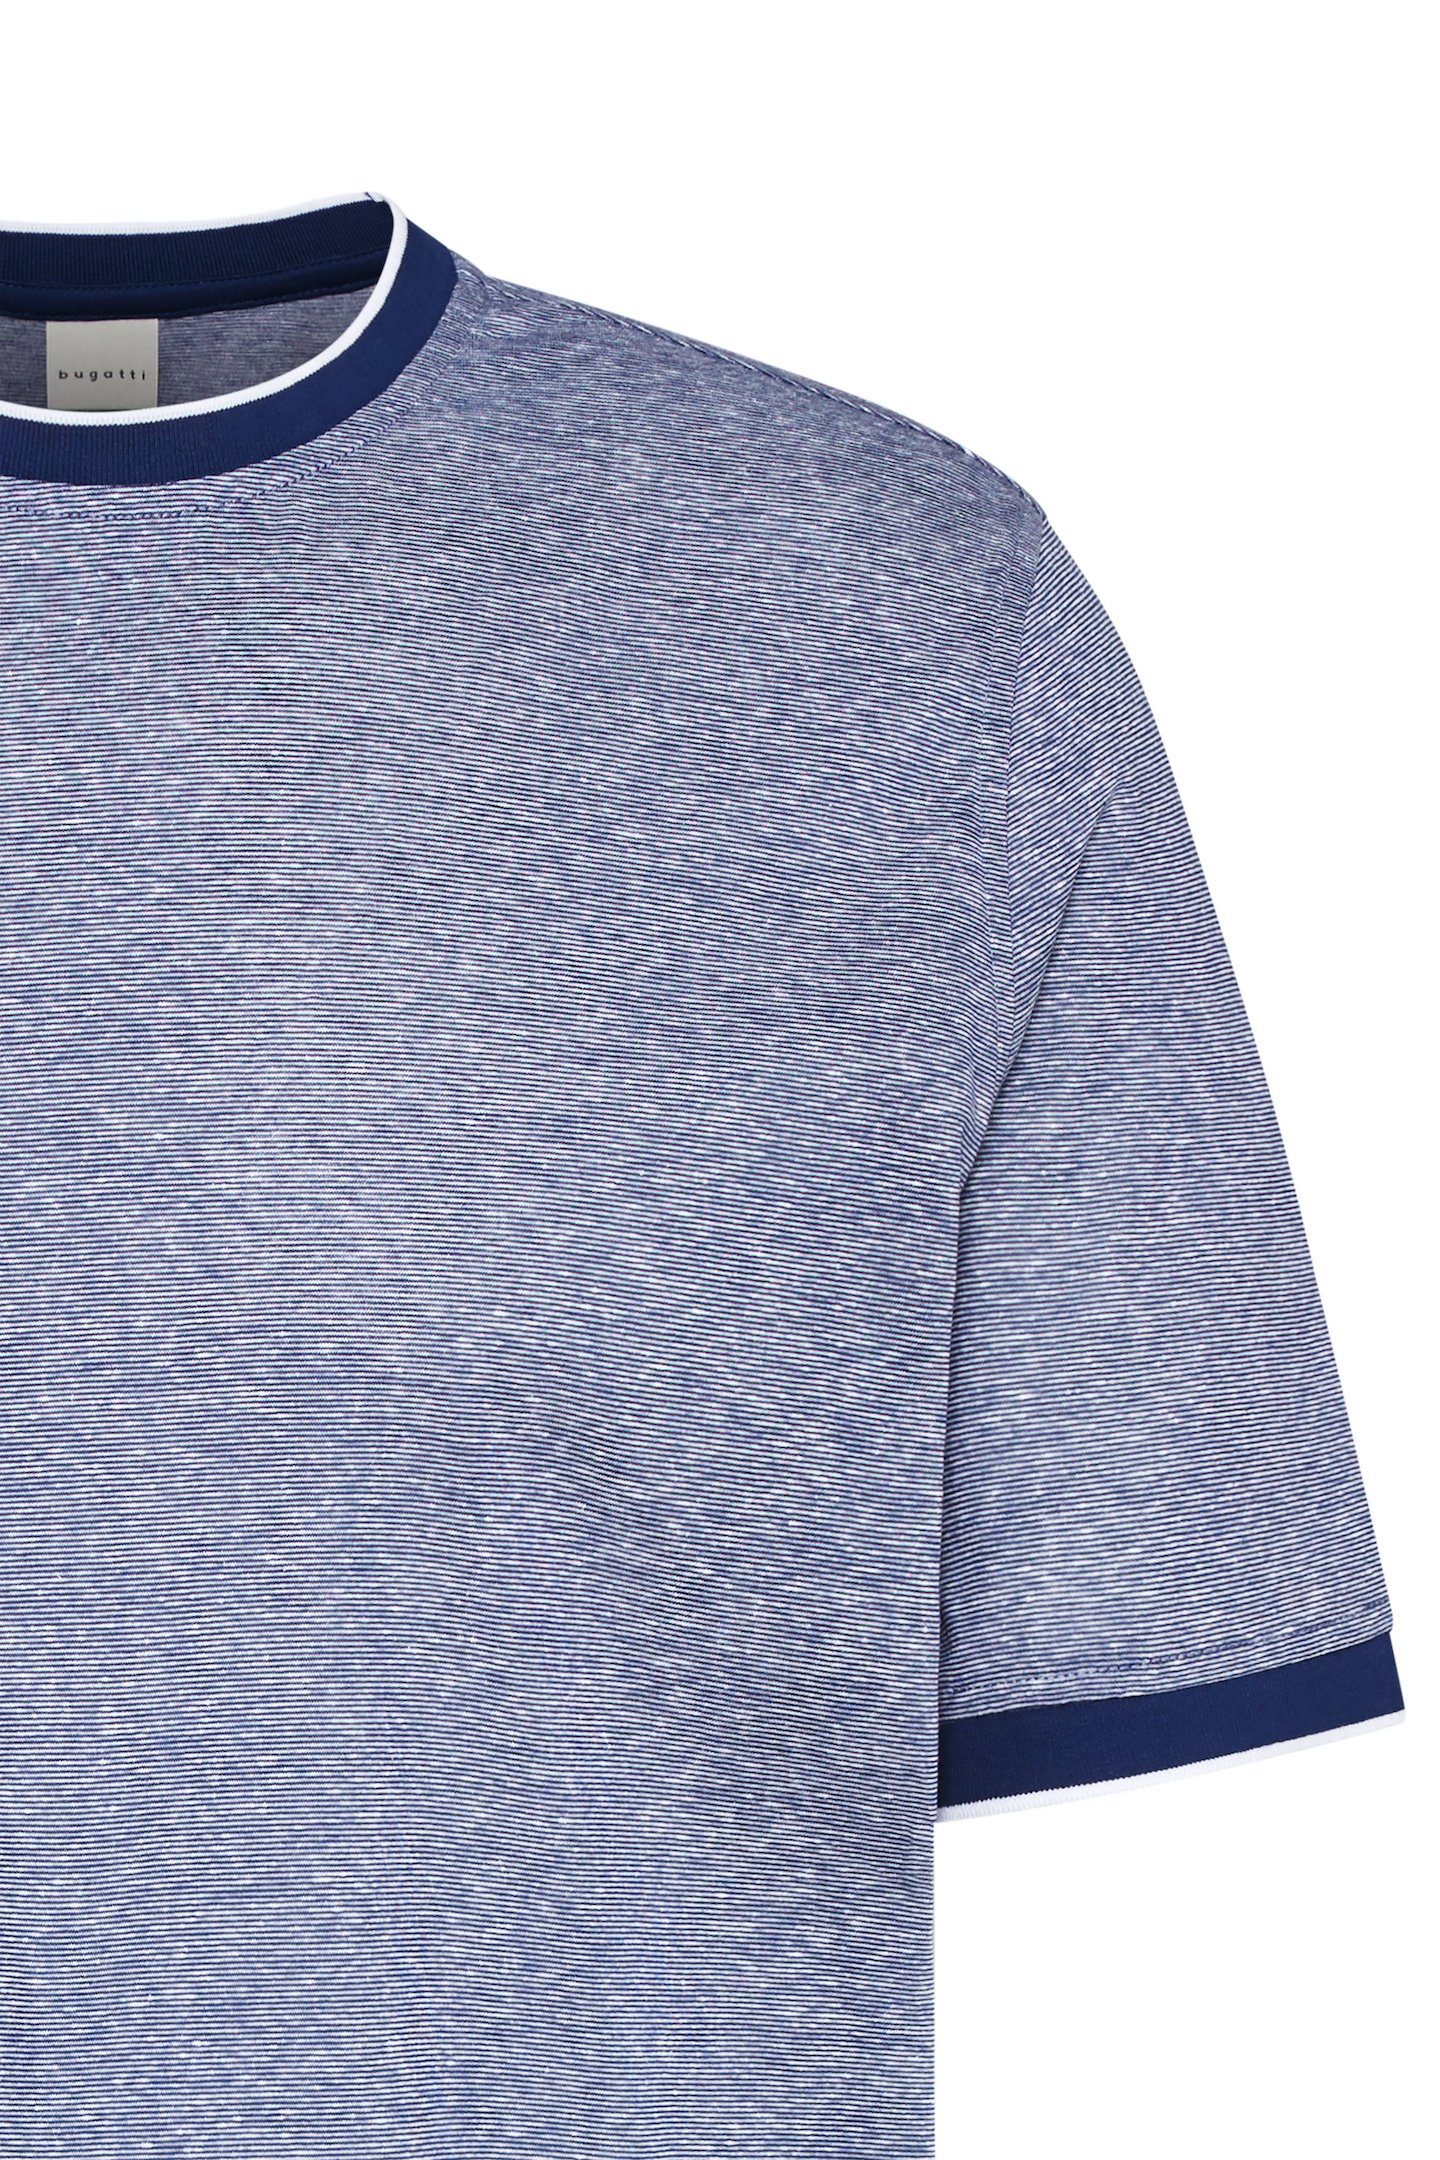 bugatti Leinen-Mix T-Shirt Cotton blau aus organic und